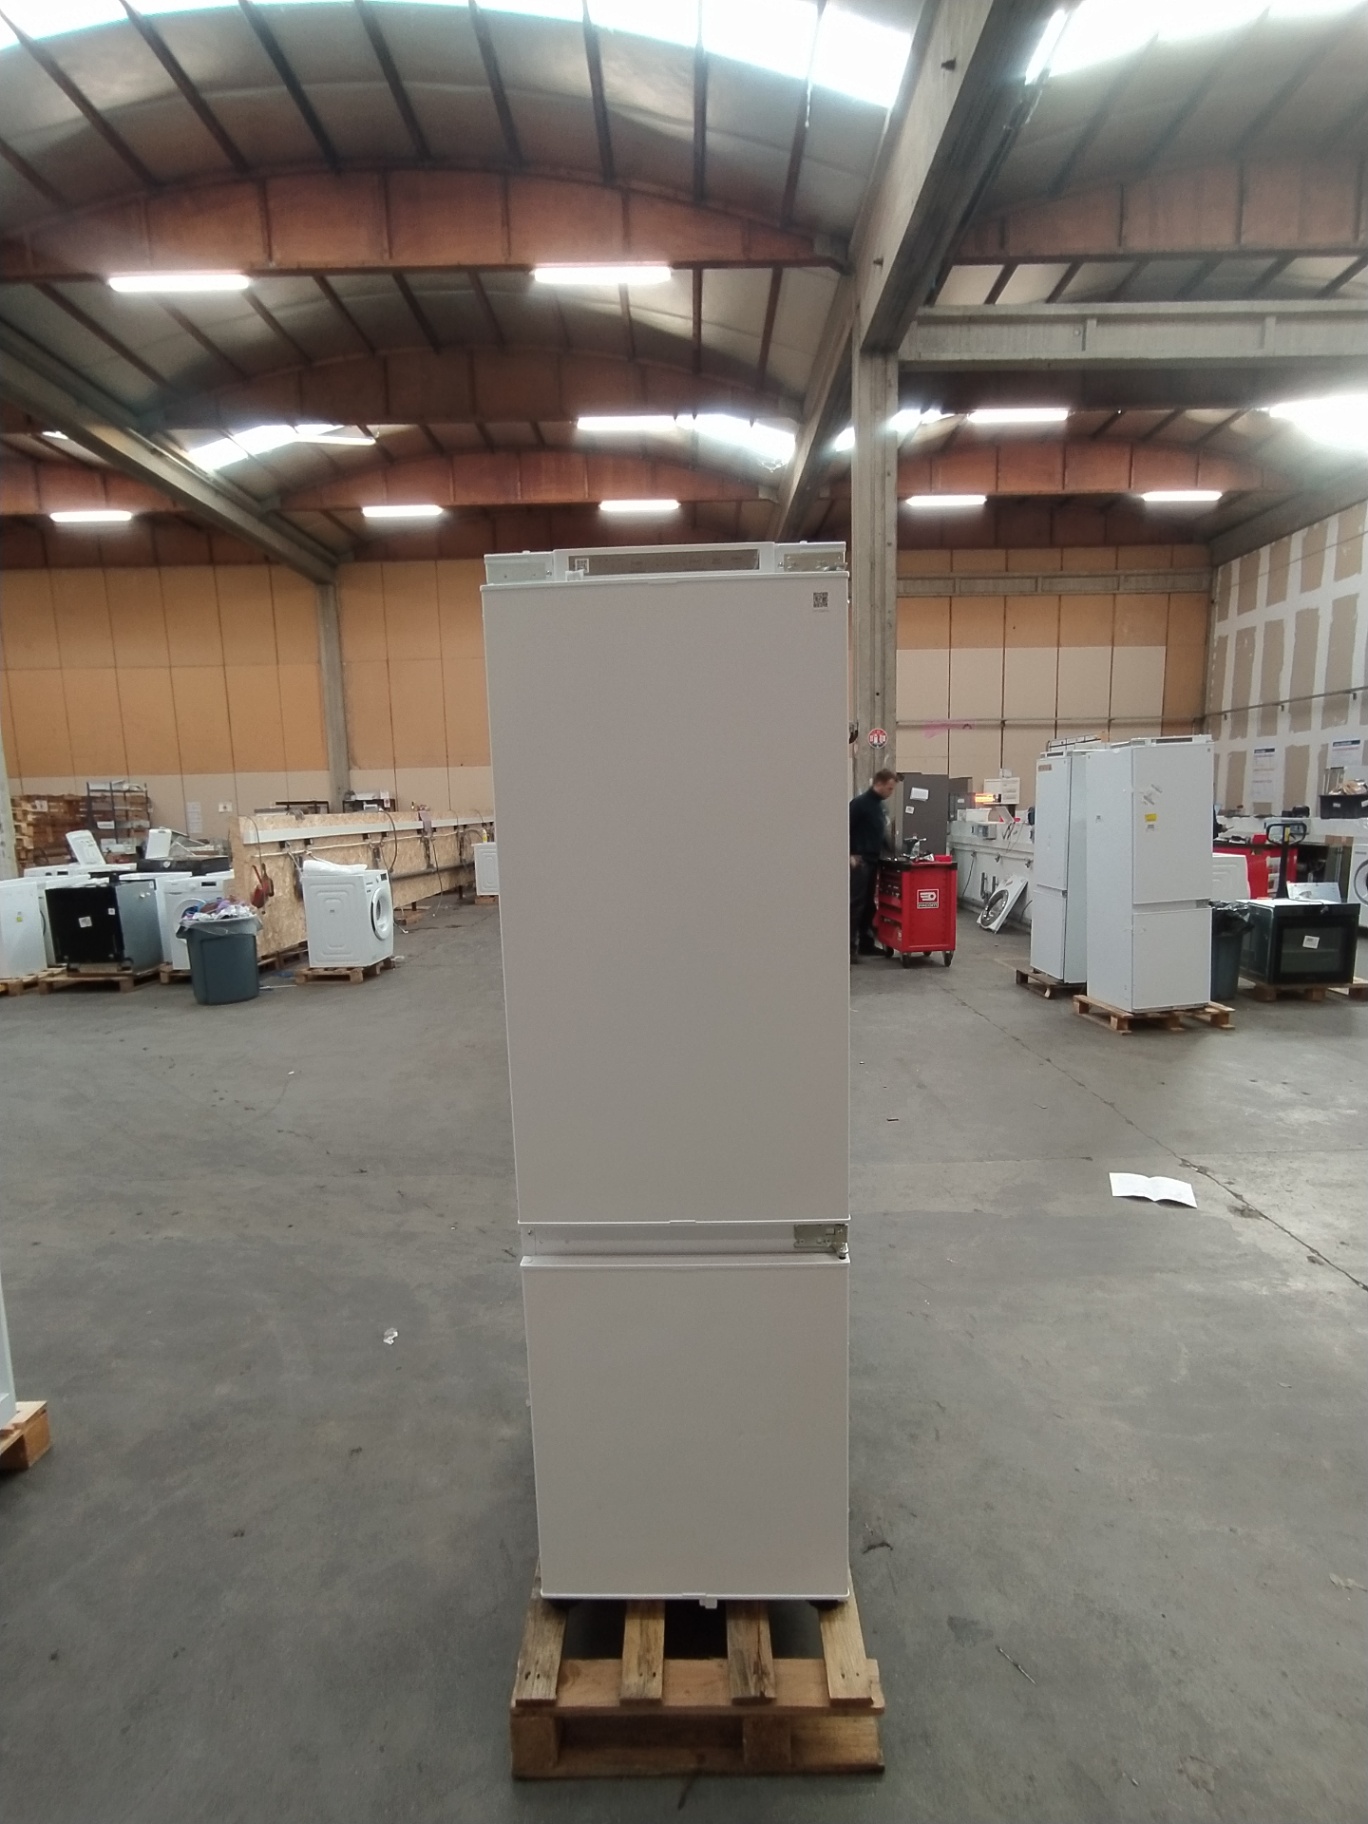 Combiné réfrigérateur-congélateur encastrable, BRB26602EWW